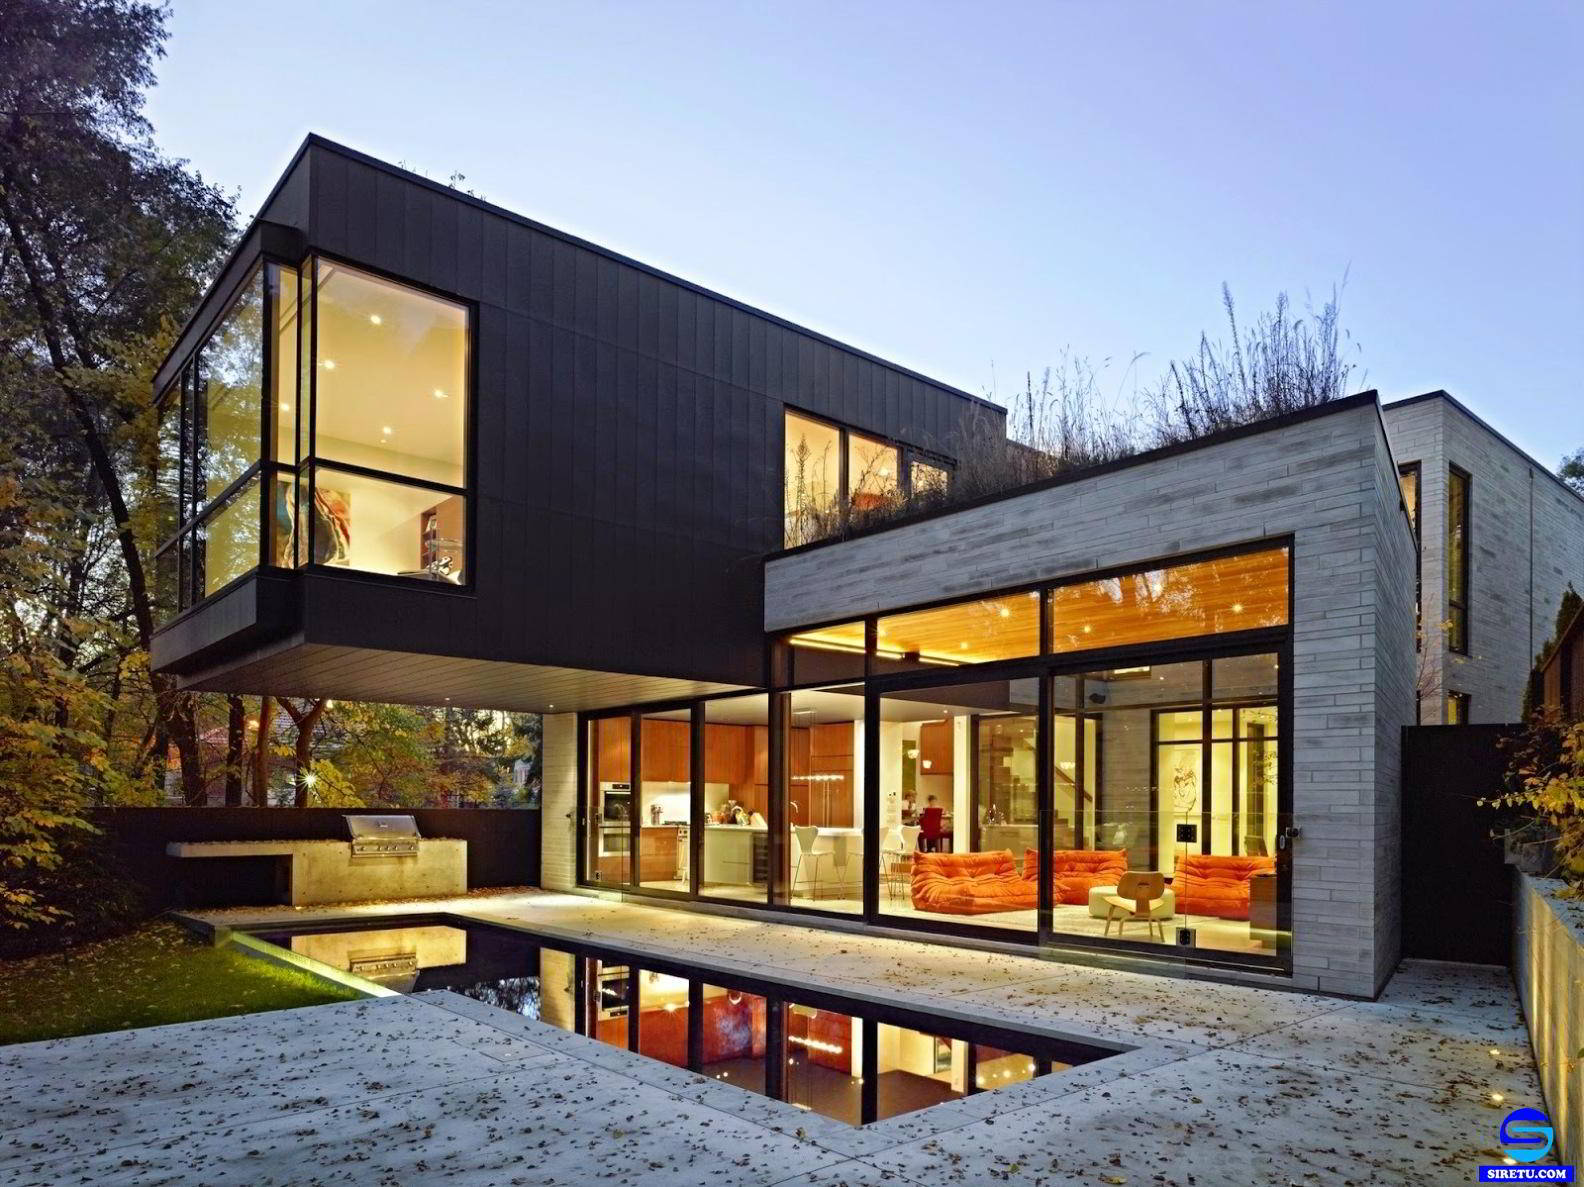 ツ 20 desain rumah kaca minimalis modern 2 lantai sederhana